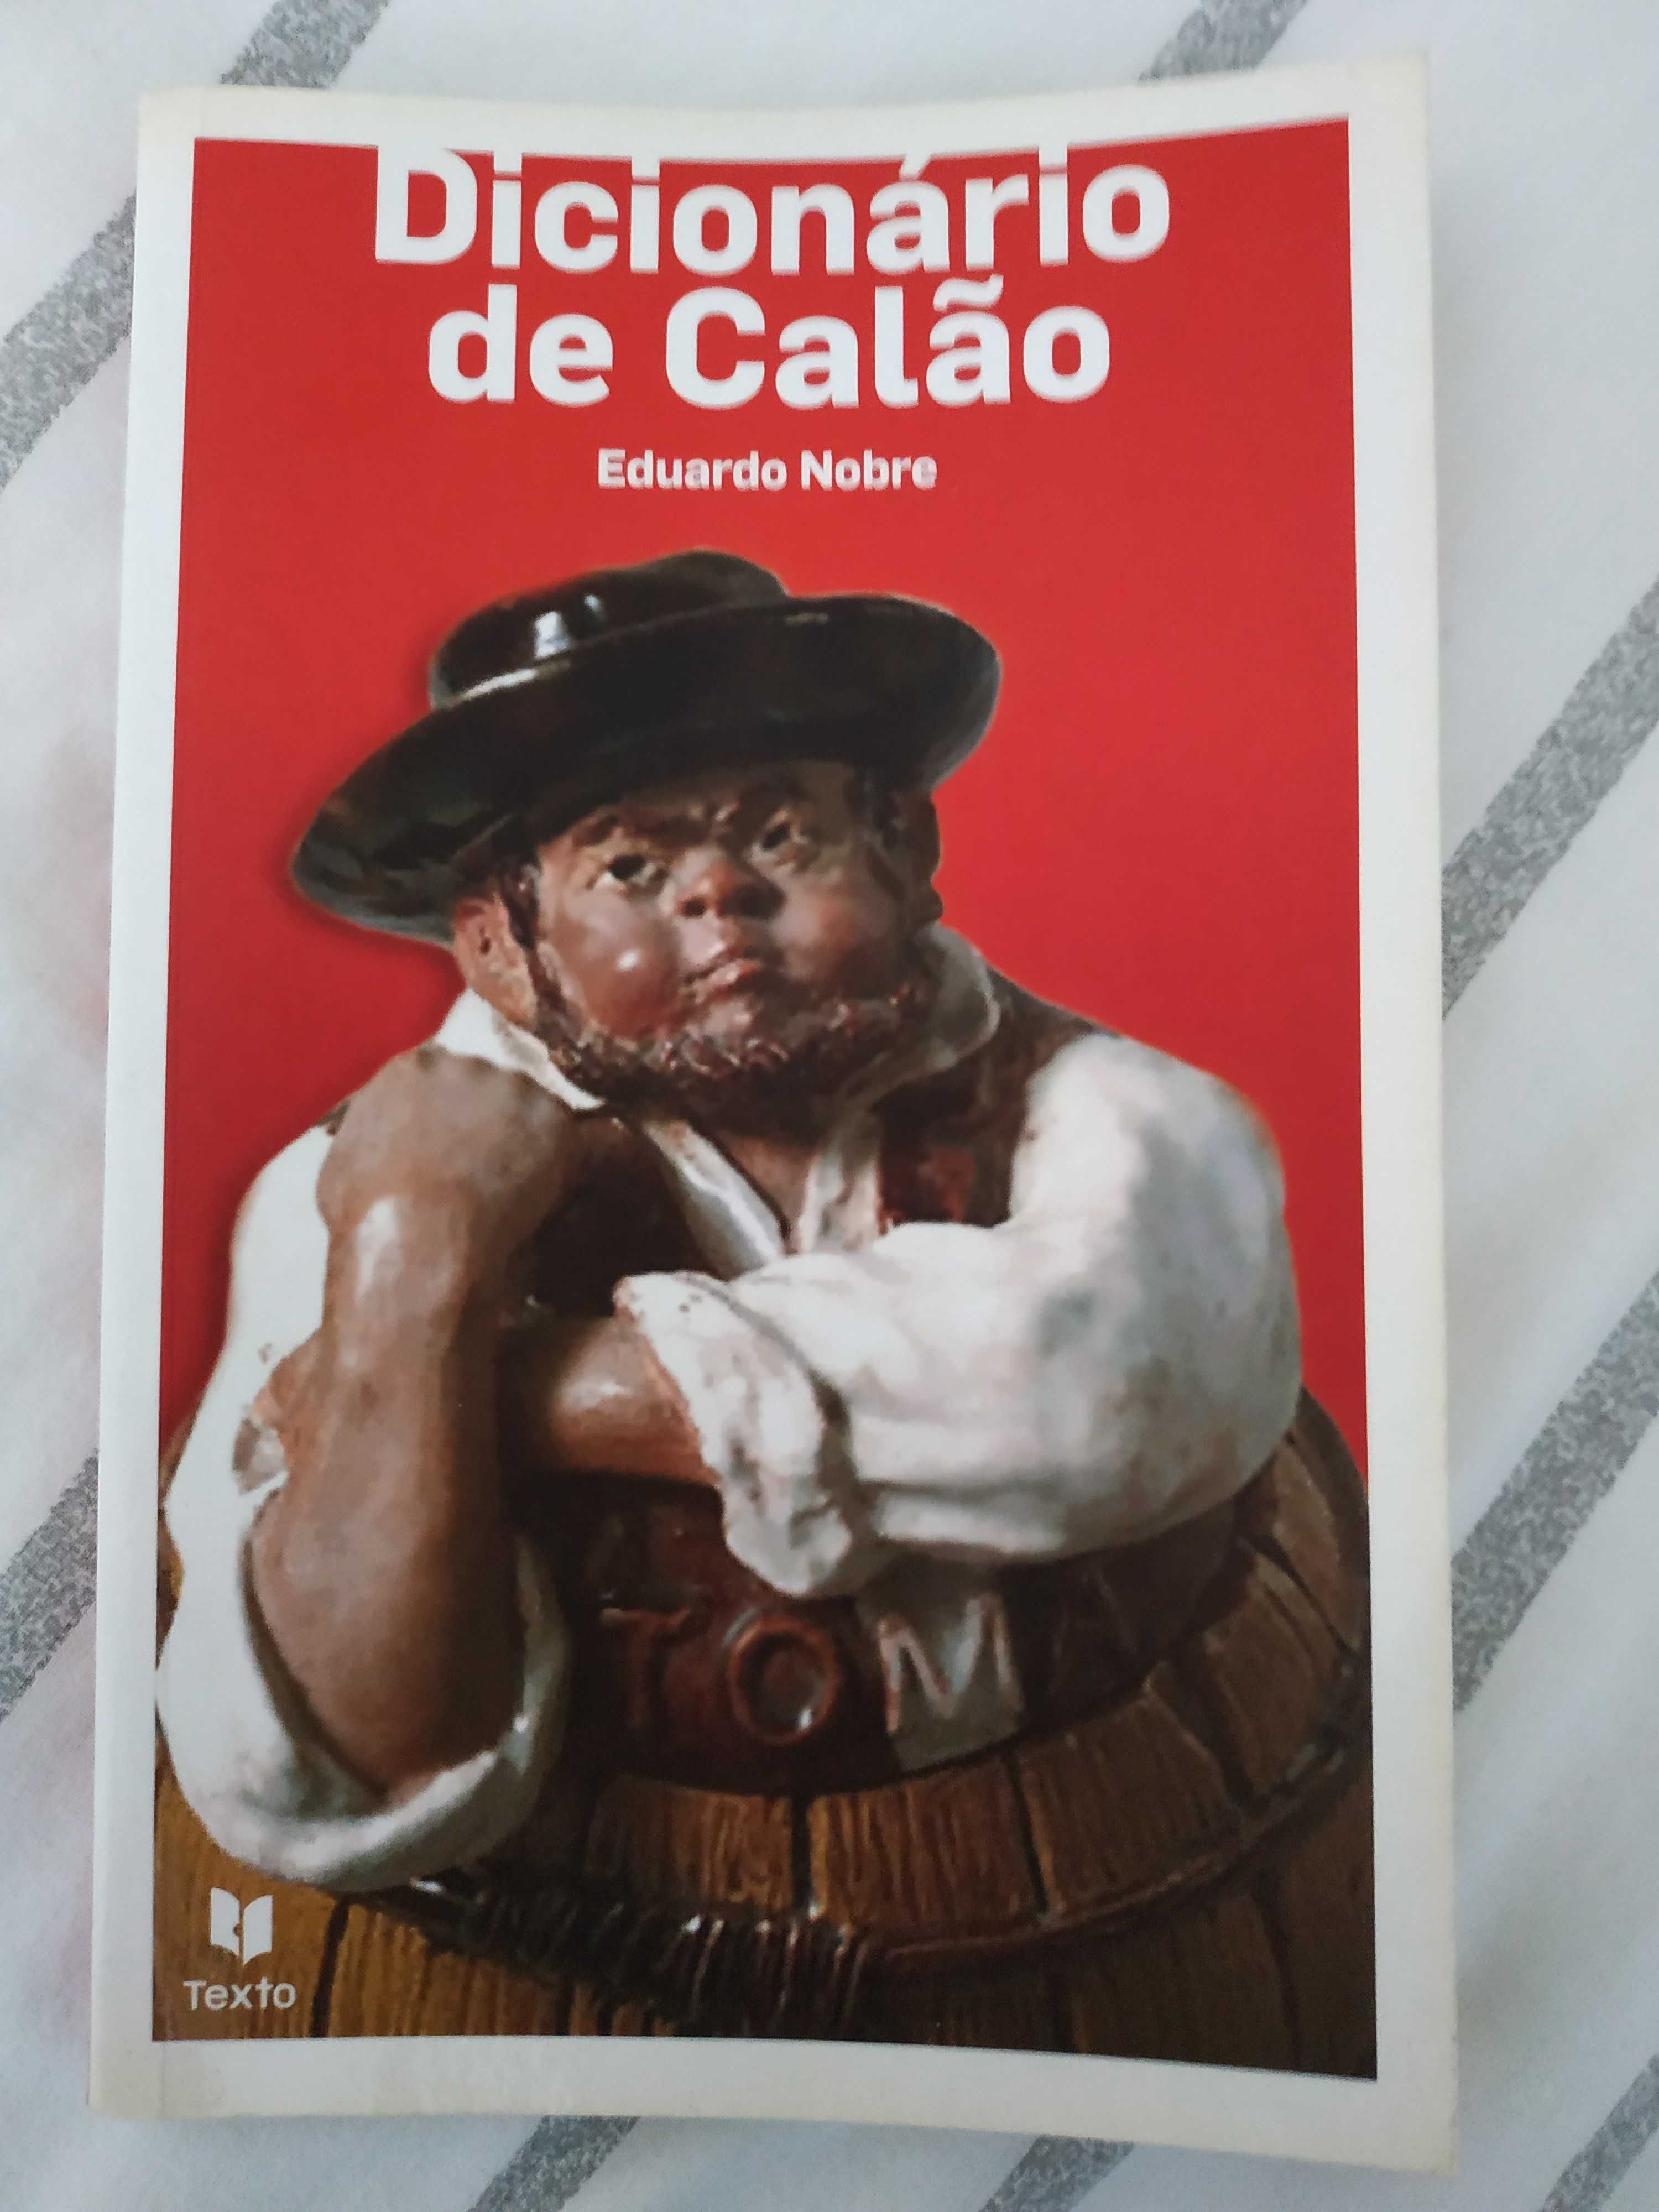 Livro "Dicionário de Calão" de Eduardo Nobre